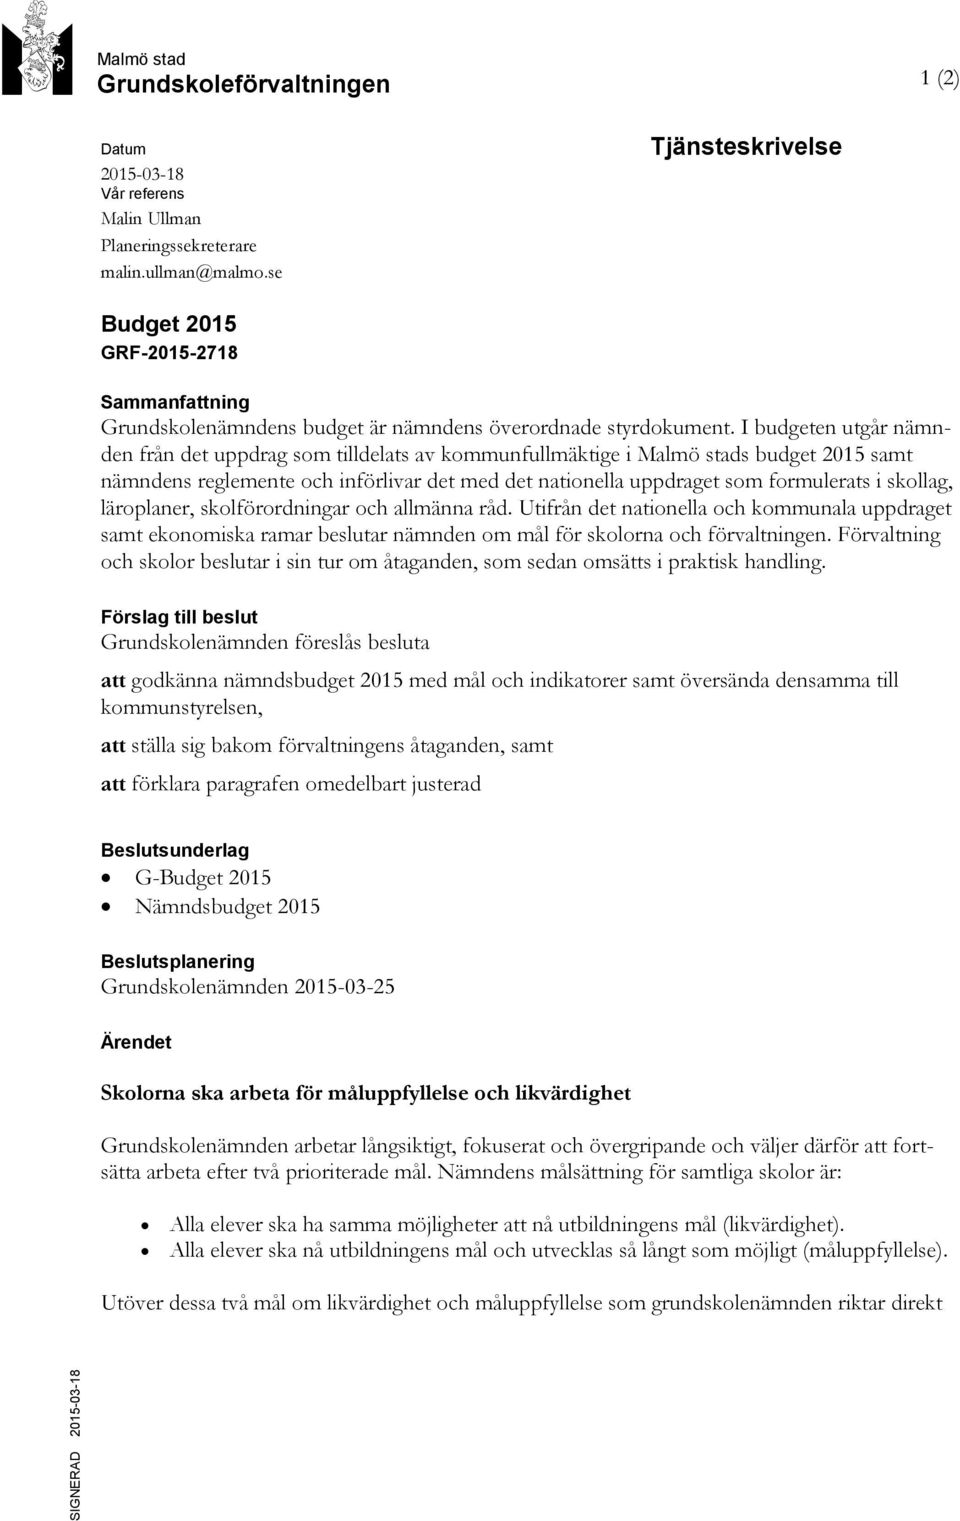 I budgeten utgår nämnden från det uppdrag som tilldelats av kommunfullmäktige i Malmö stads budget 2015 samt nämndens reglemente och införlivar det med det nationella uppdraget som formulerats i